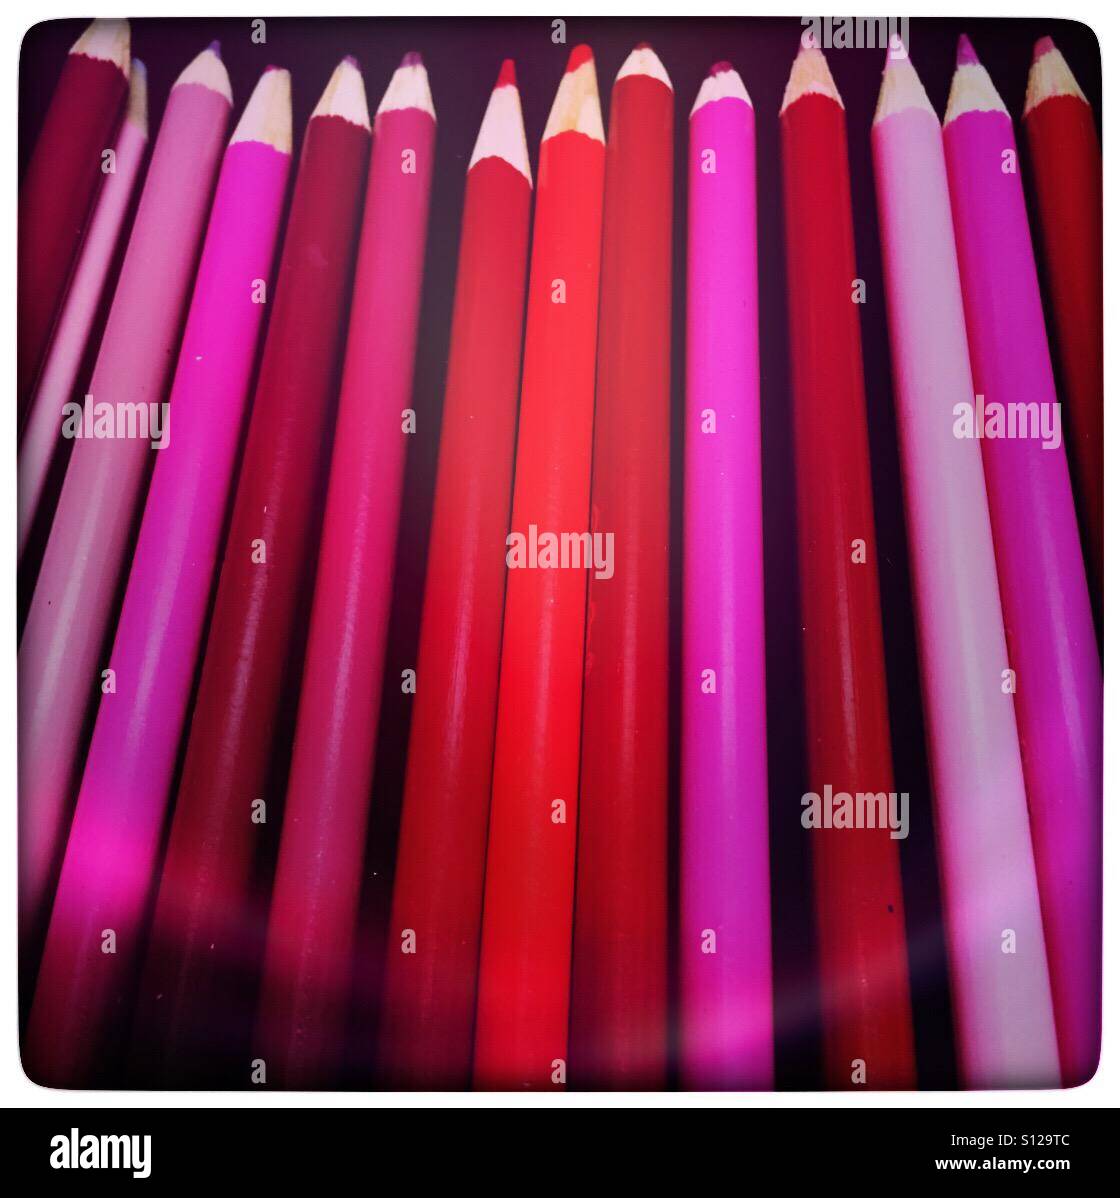 Crayons de couleur rose Photo Stock - Alamy